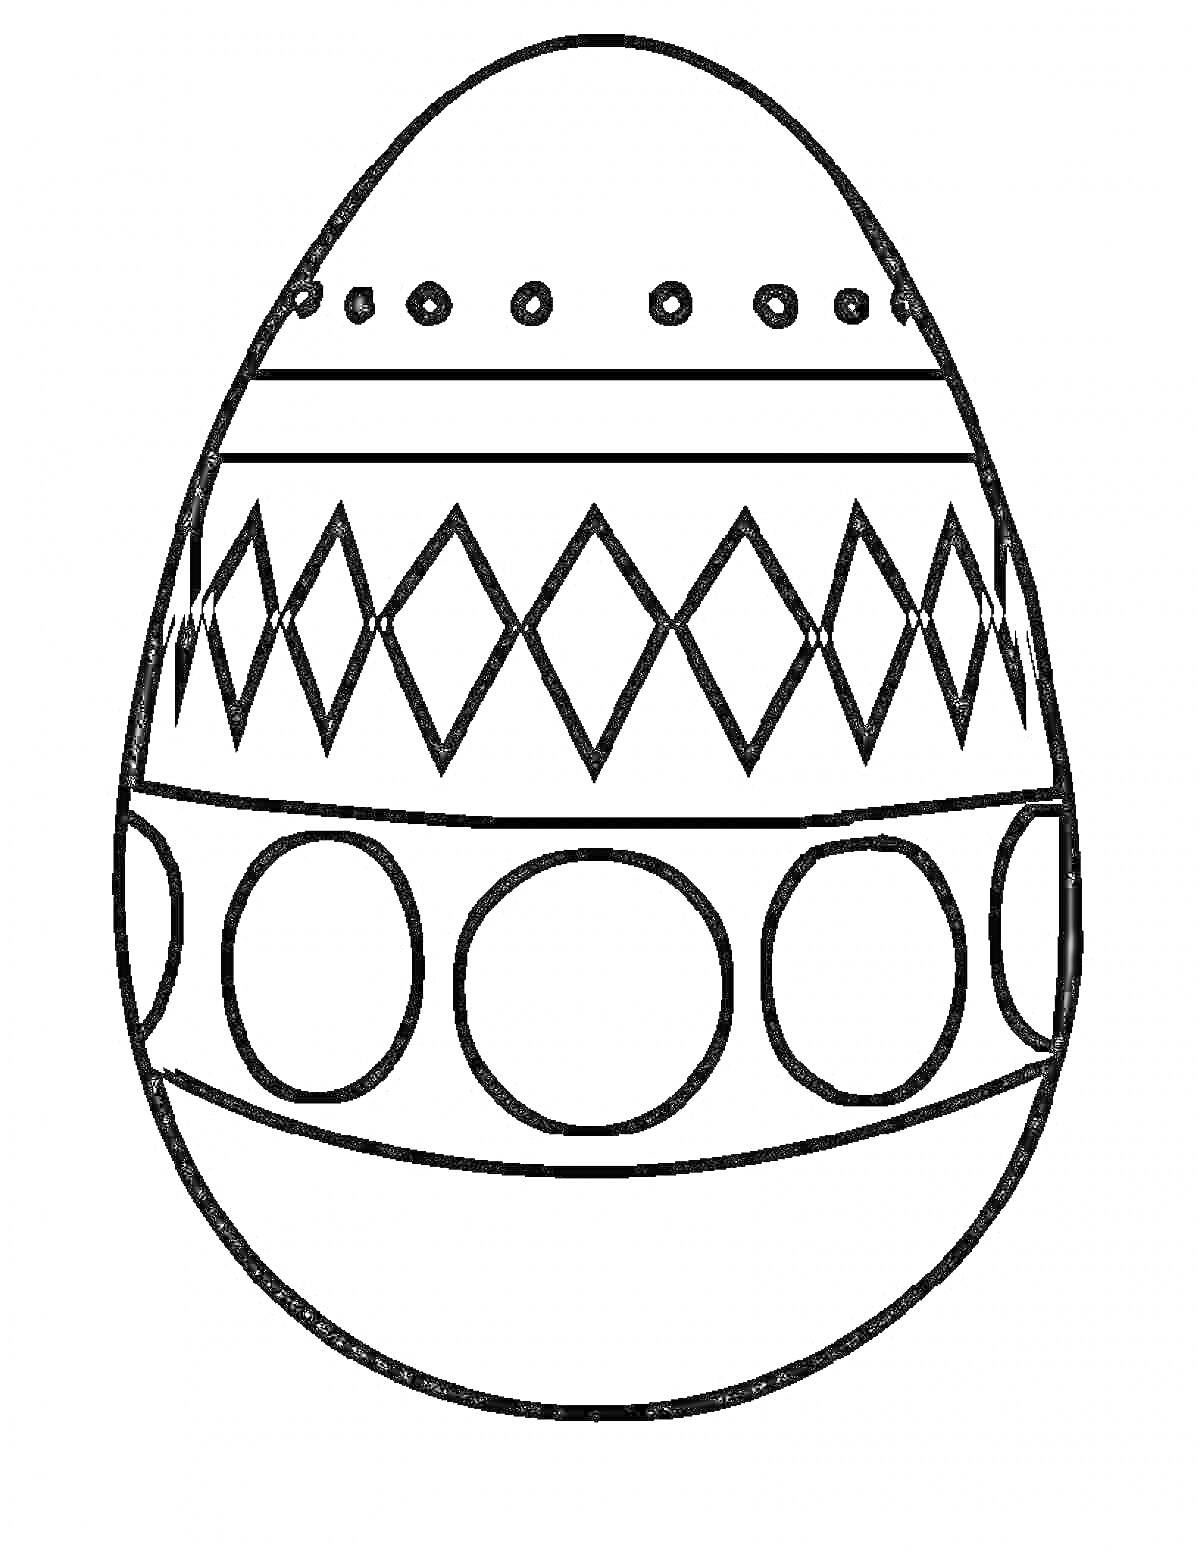 Раскраска Пасхальное яйцо с узорами из точек, ромбов и кругов